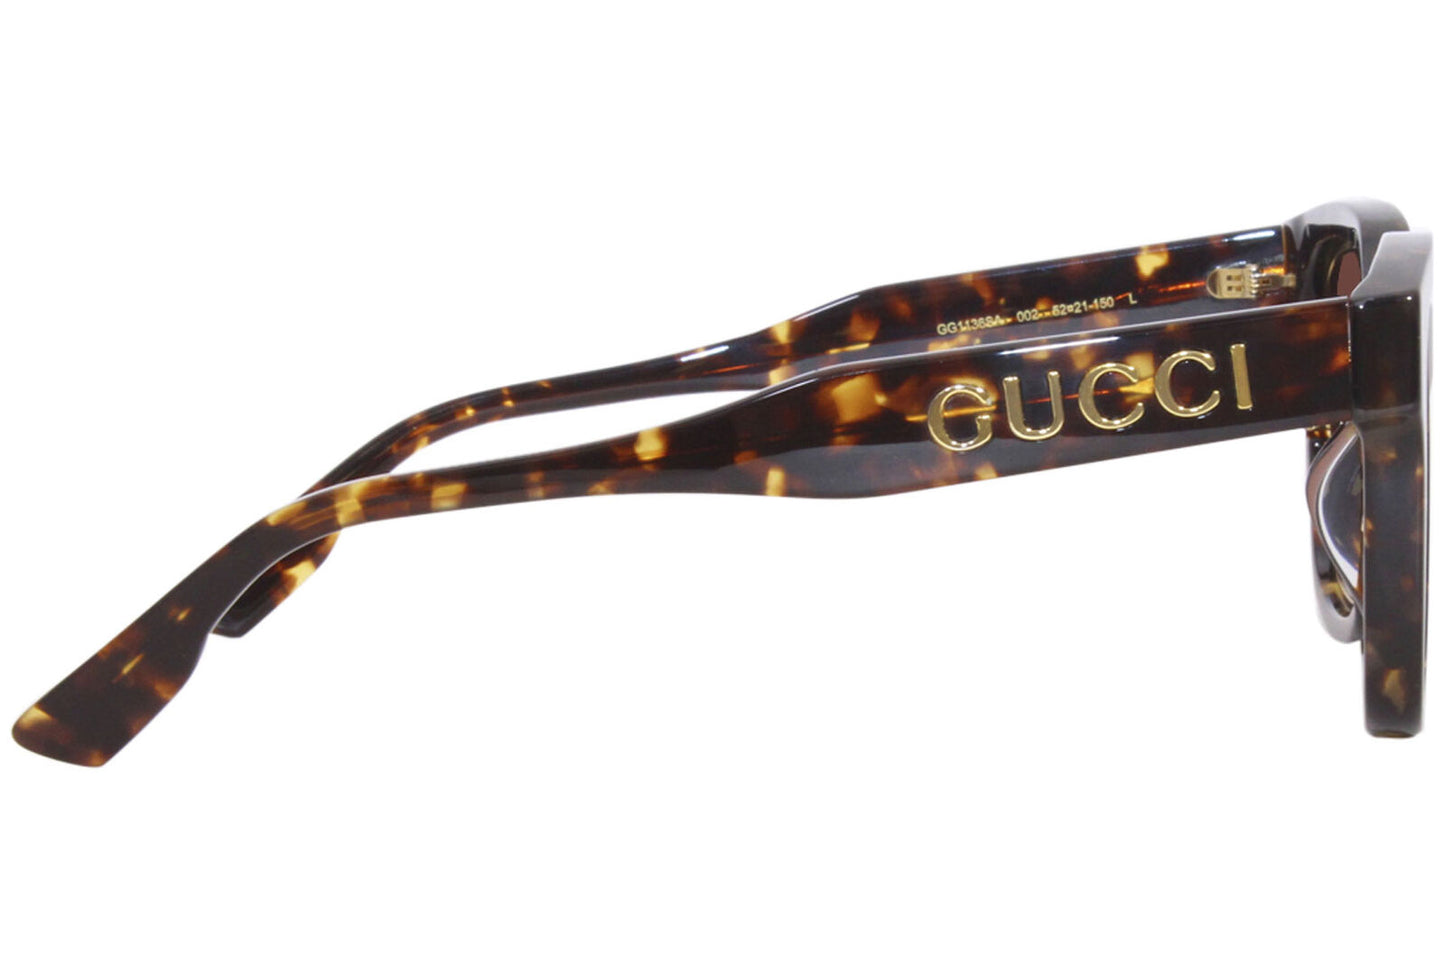 Gucci GG1136SA-002-52 52mm New Sunglasses